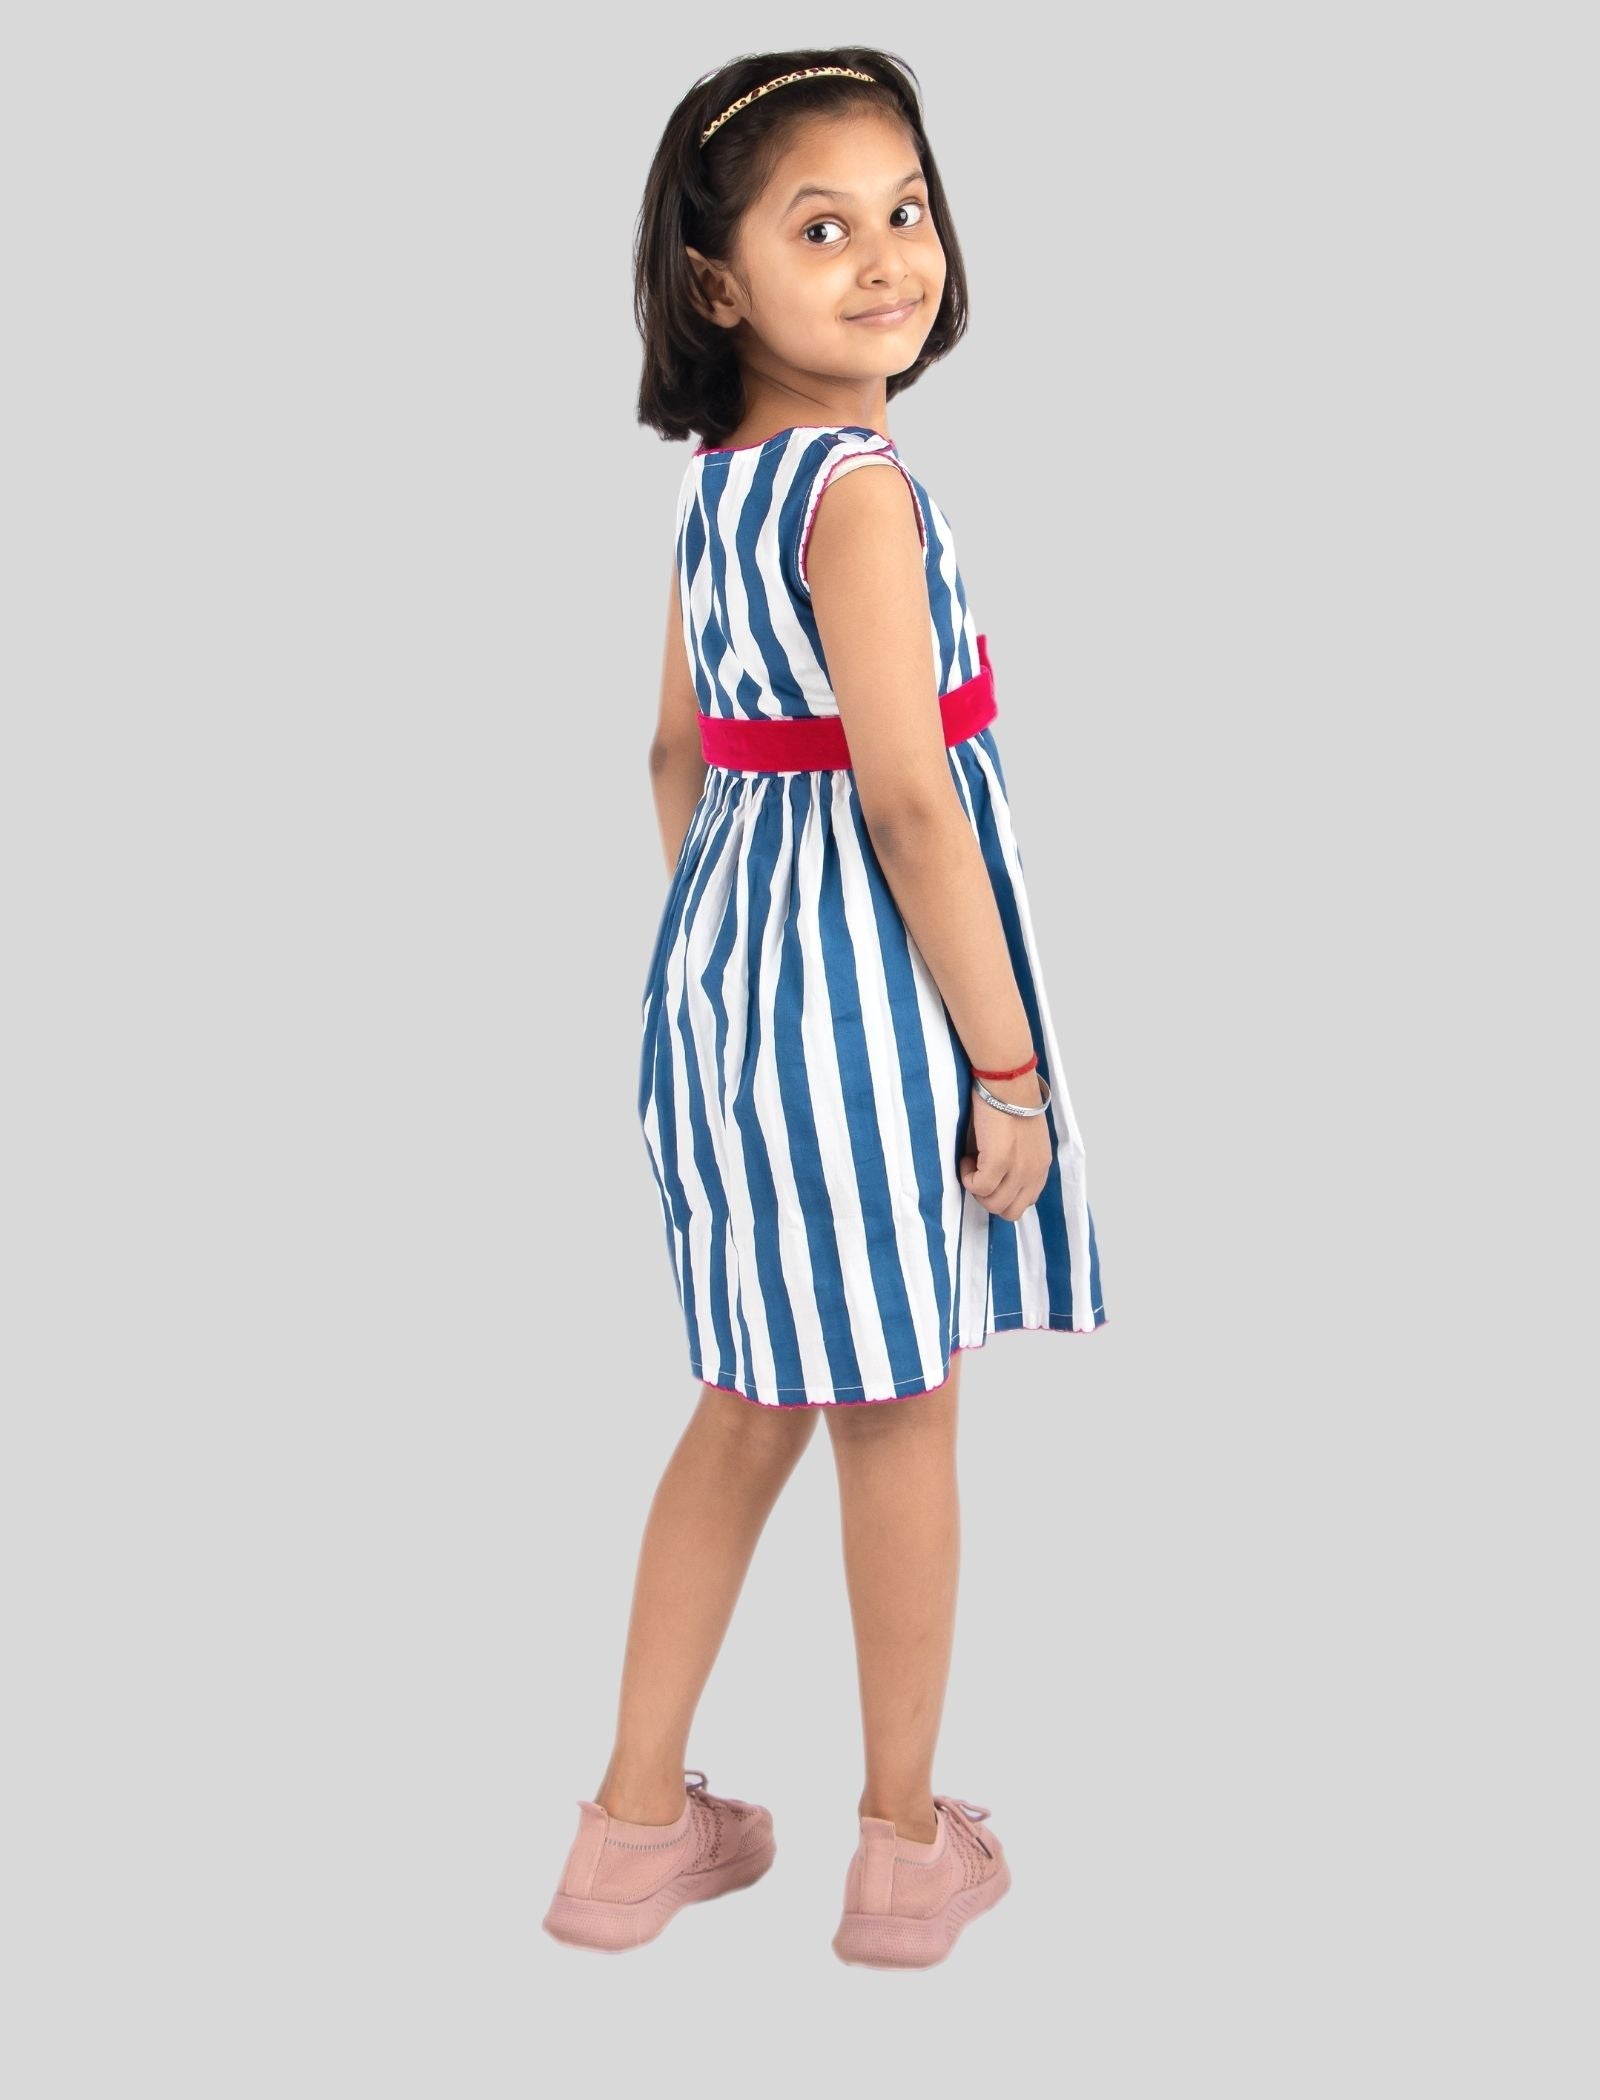 Blue Striped Dress - Tweeny Mini